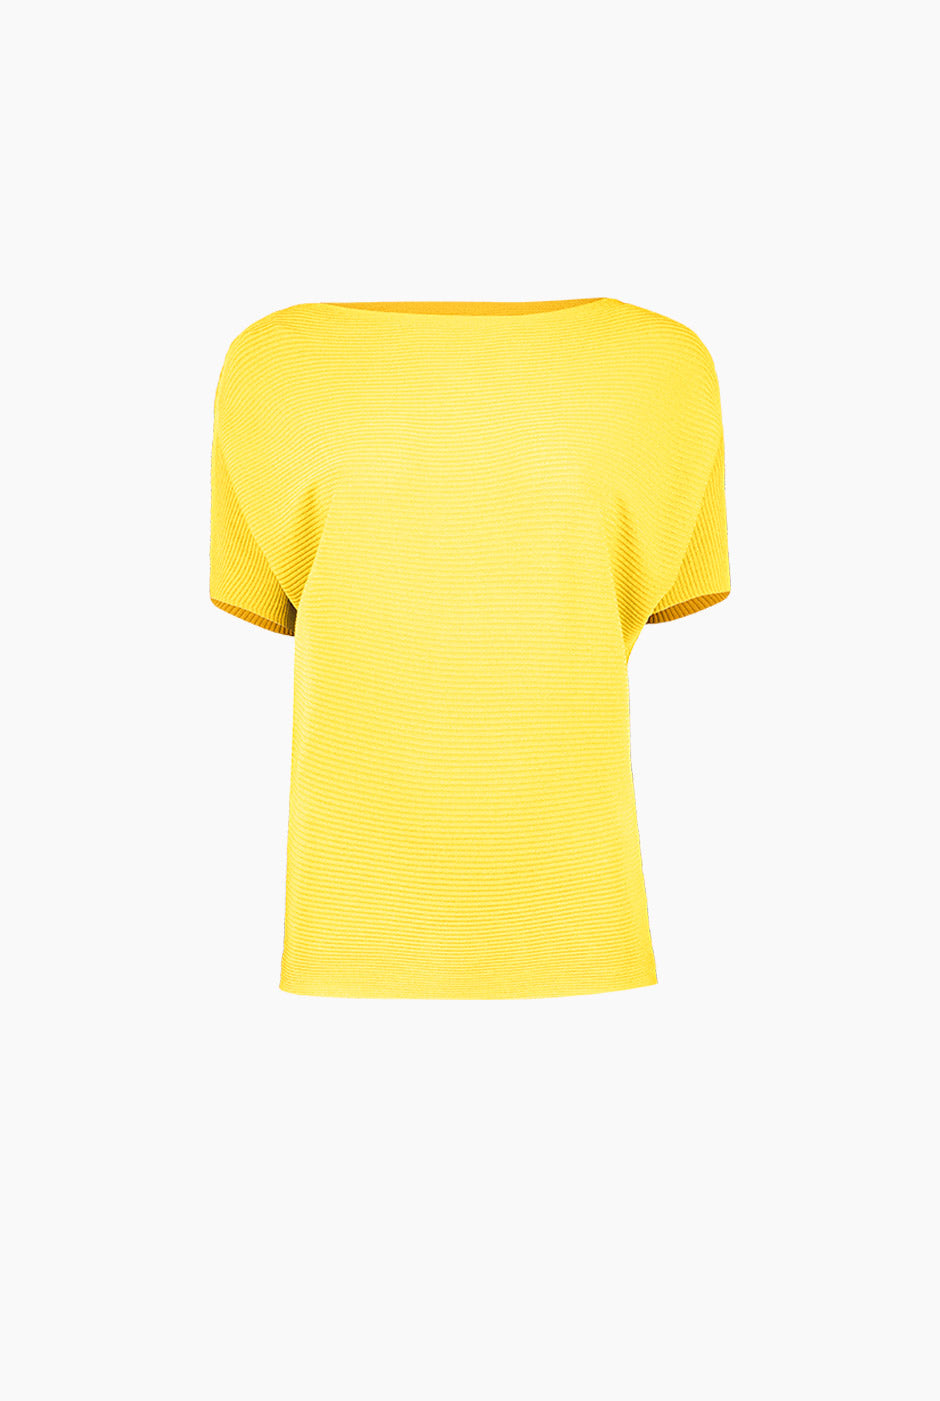 Blusa manga corta color amarillo